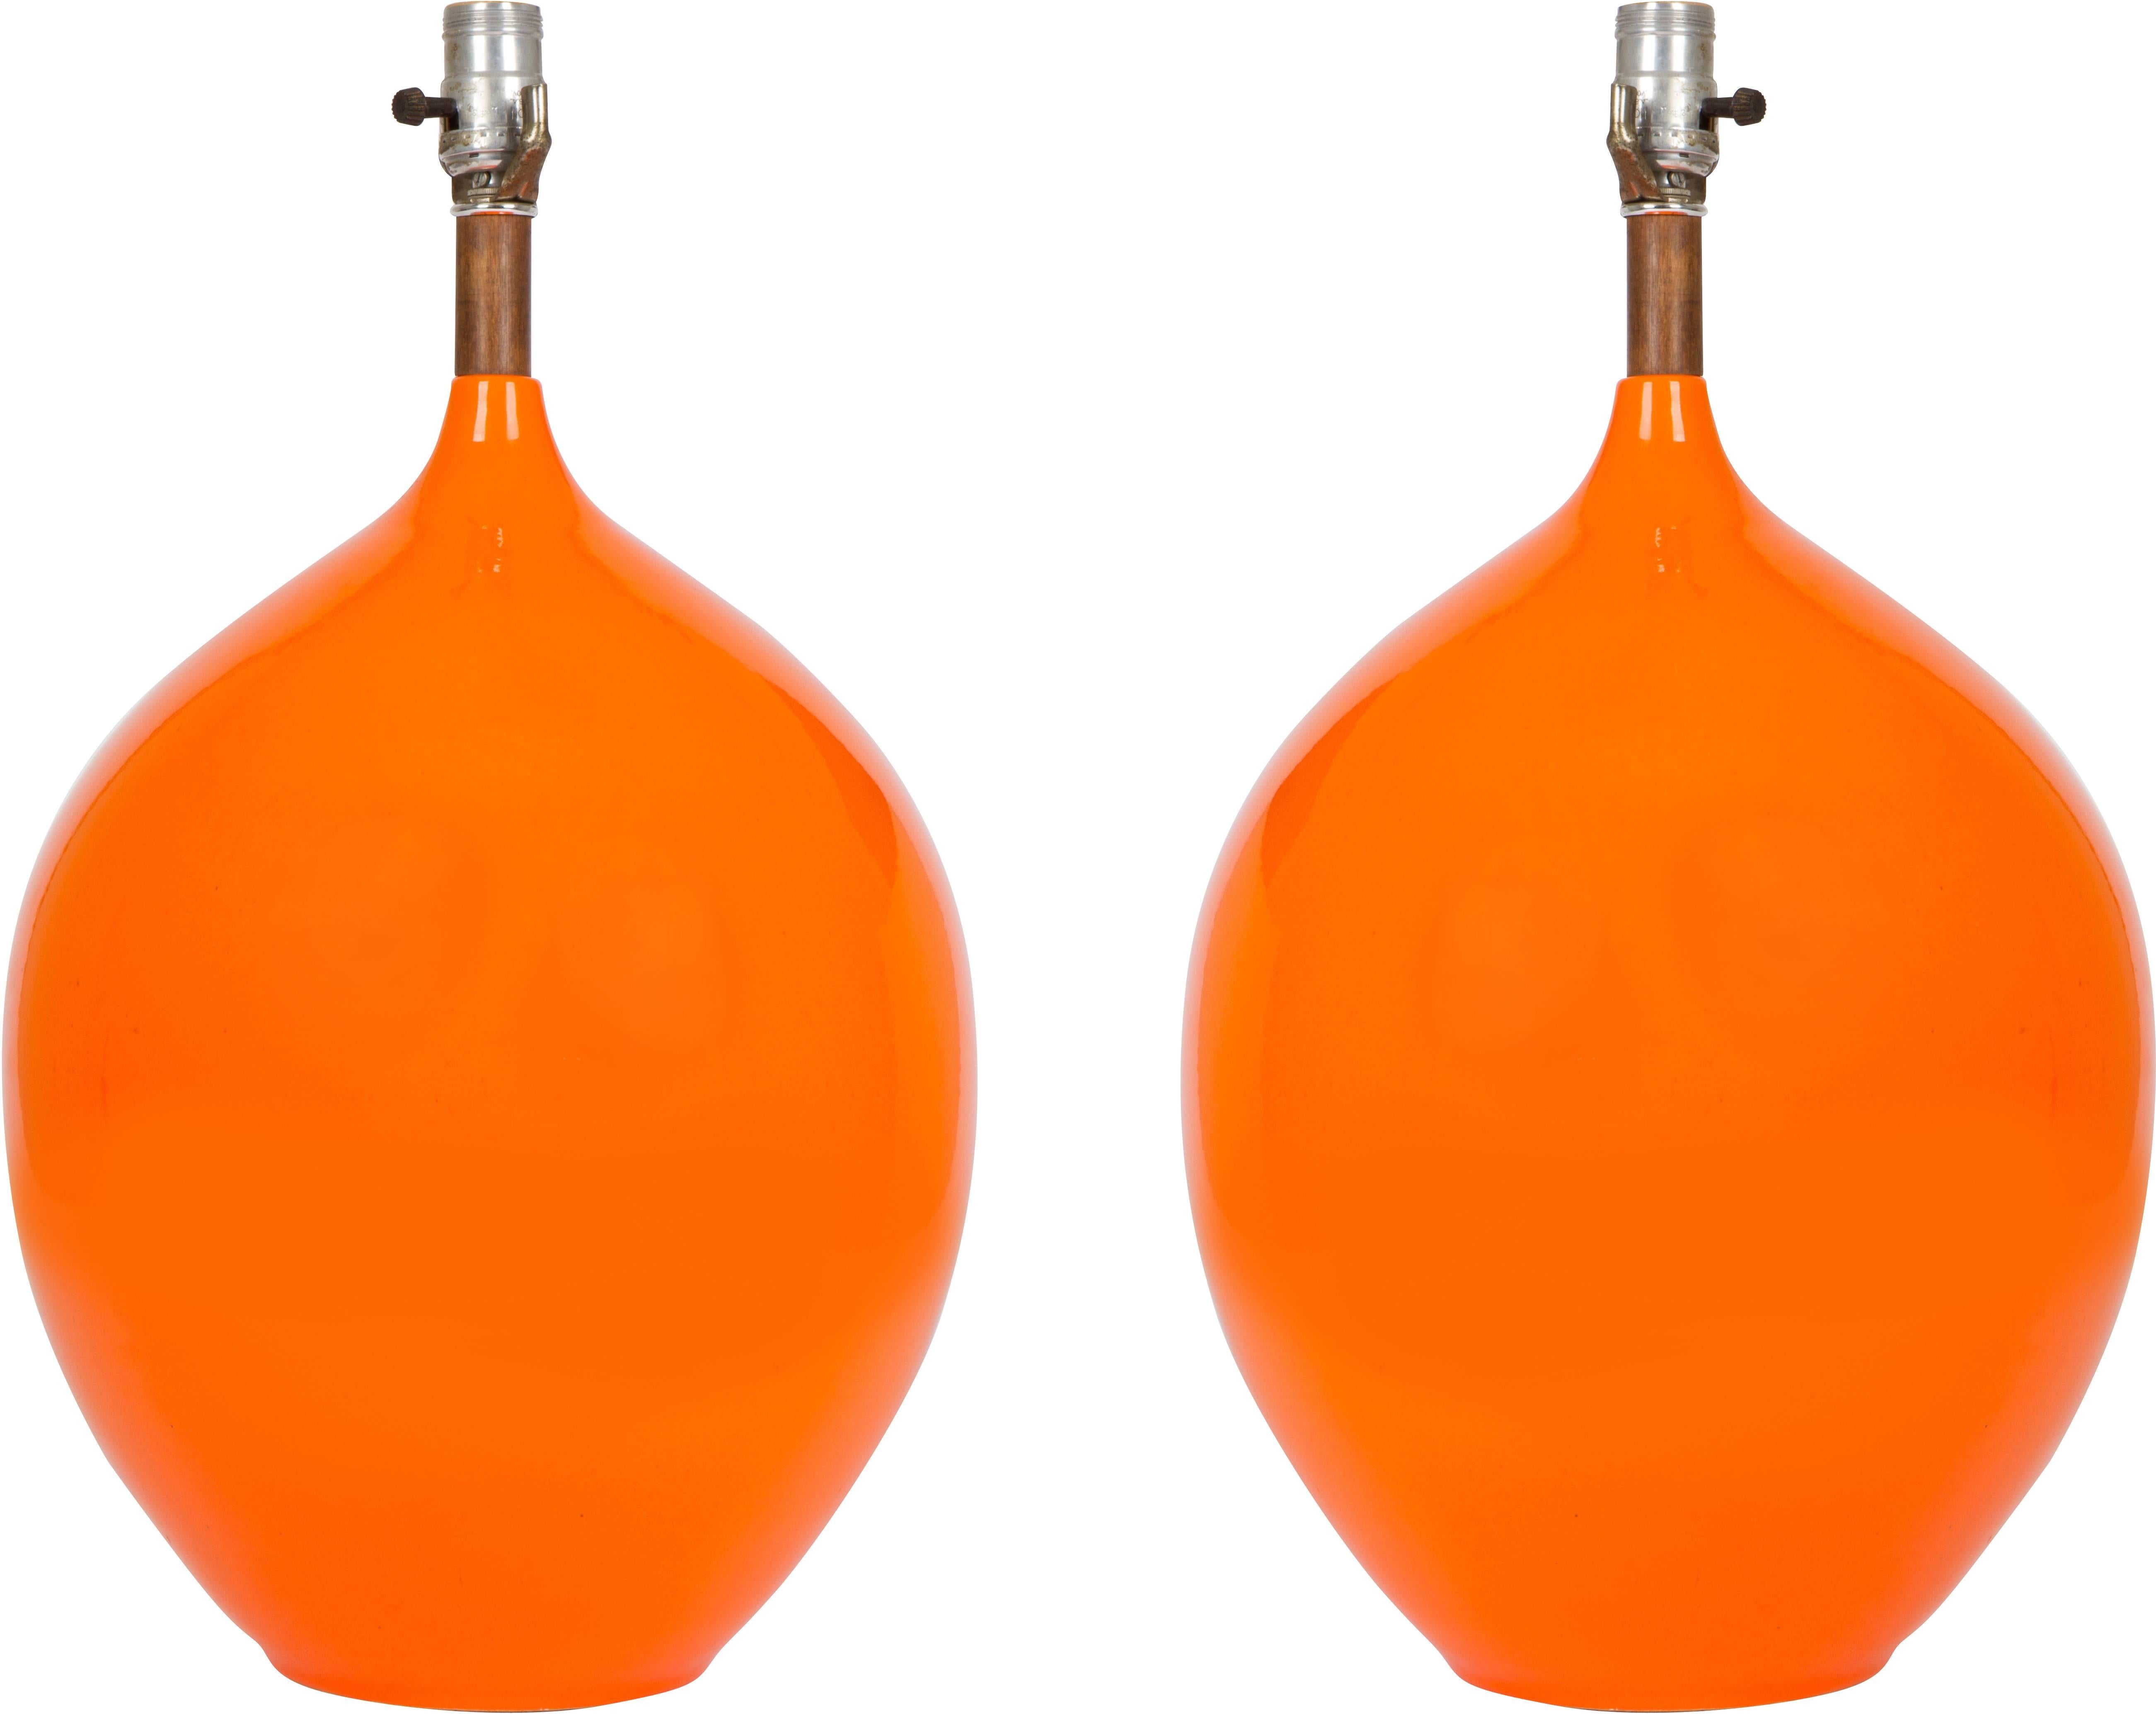 Très chic et impressionnante paire de lampes, grès émaillé orange, noyer, parchemin, 1960 attribuée à Jacques et Dani Ruelland, France, vers 1960.
Les abat-jour ne sont pas inclus.